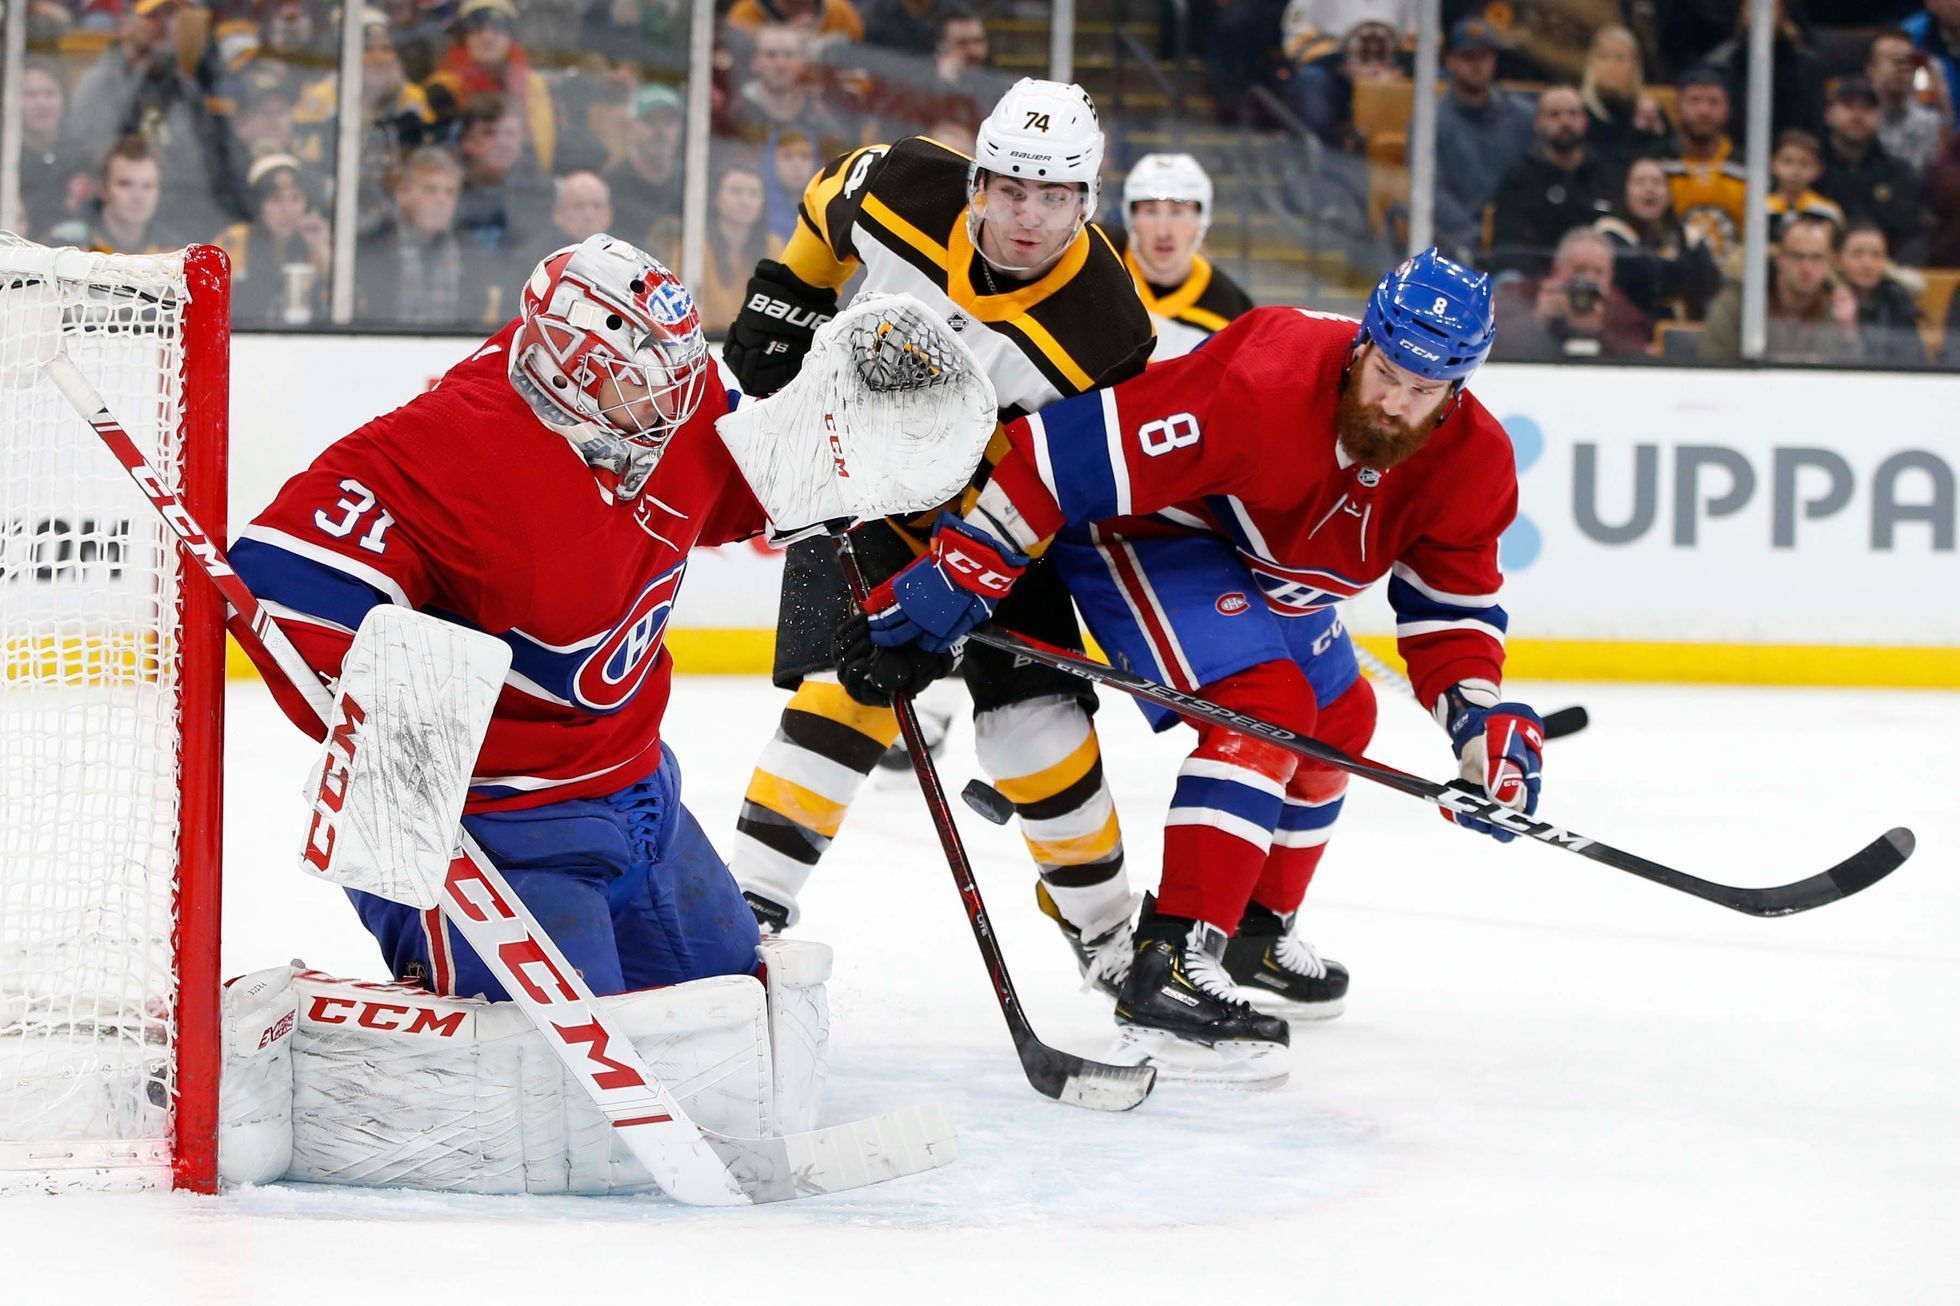 hokej, NHL 2018/2019, Boston - Montreal, gólman Carey Price zasahuje